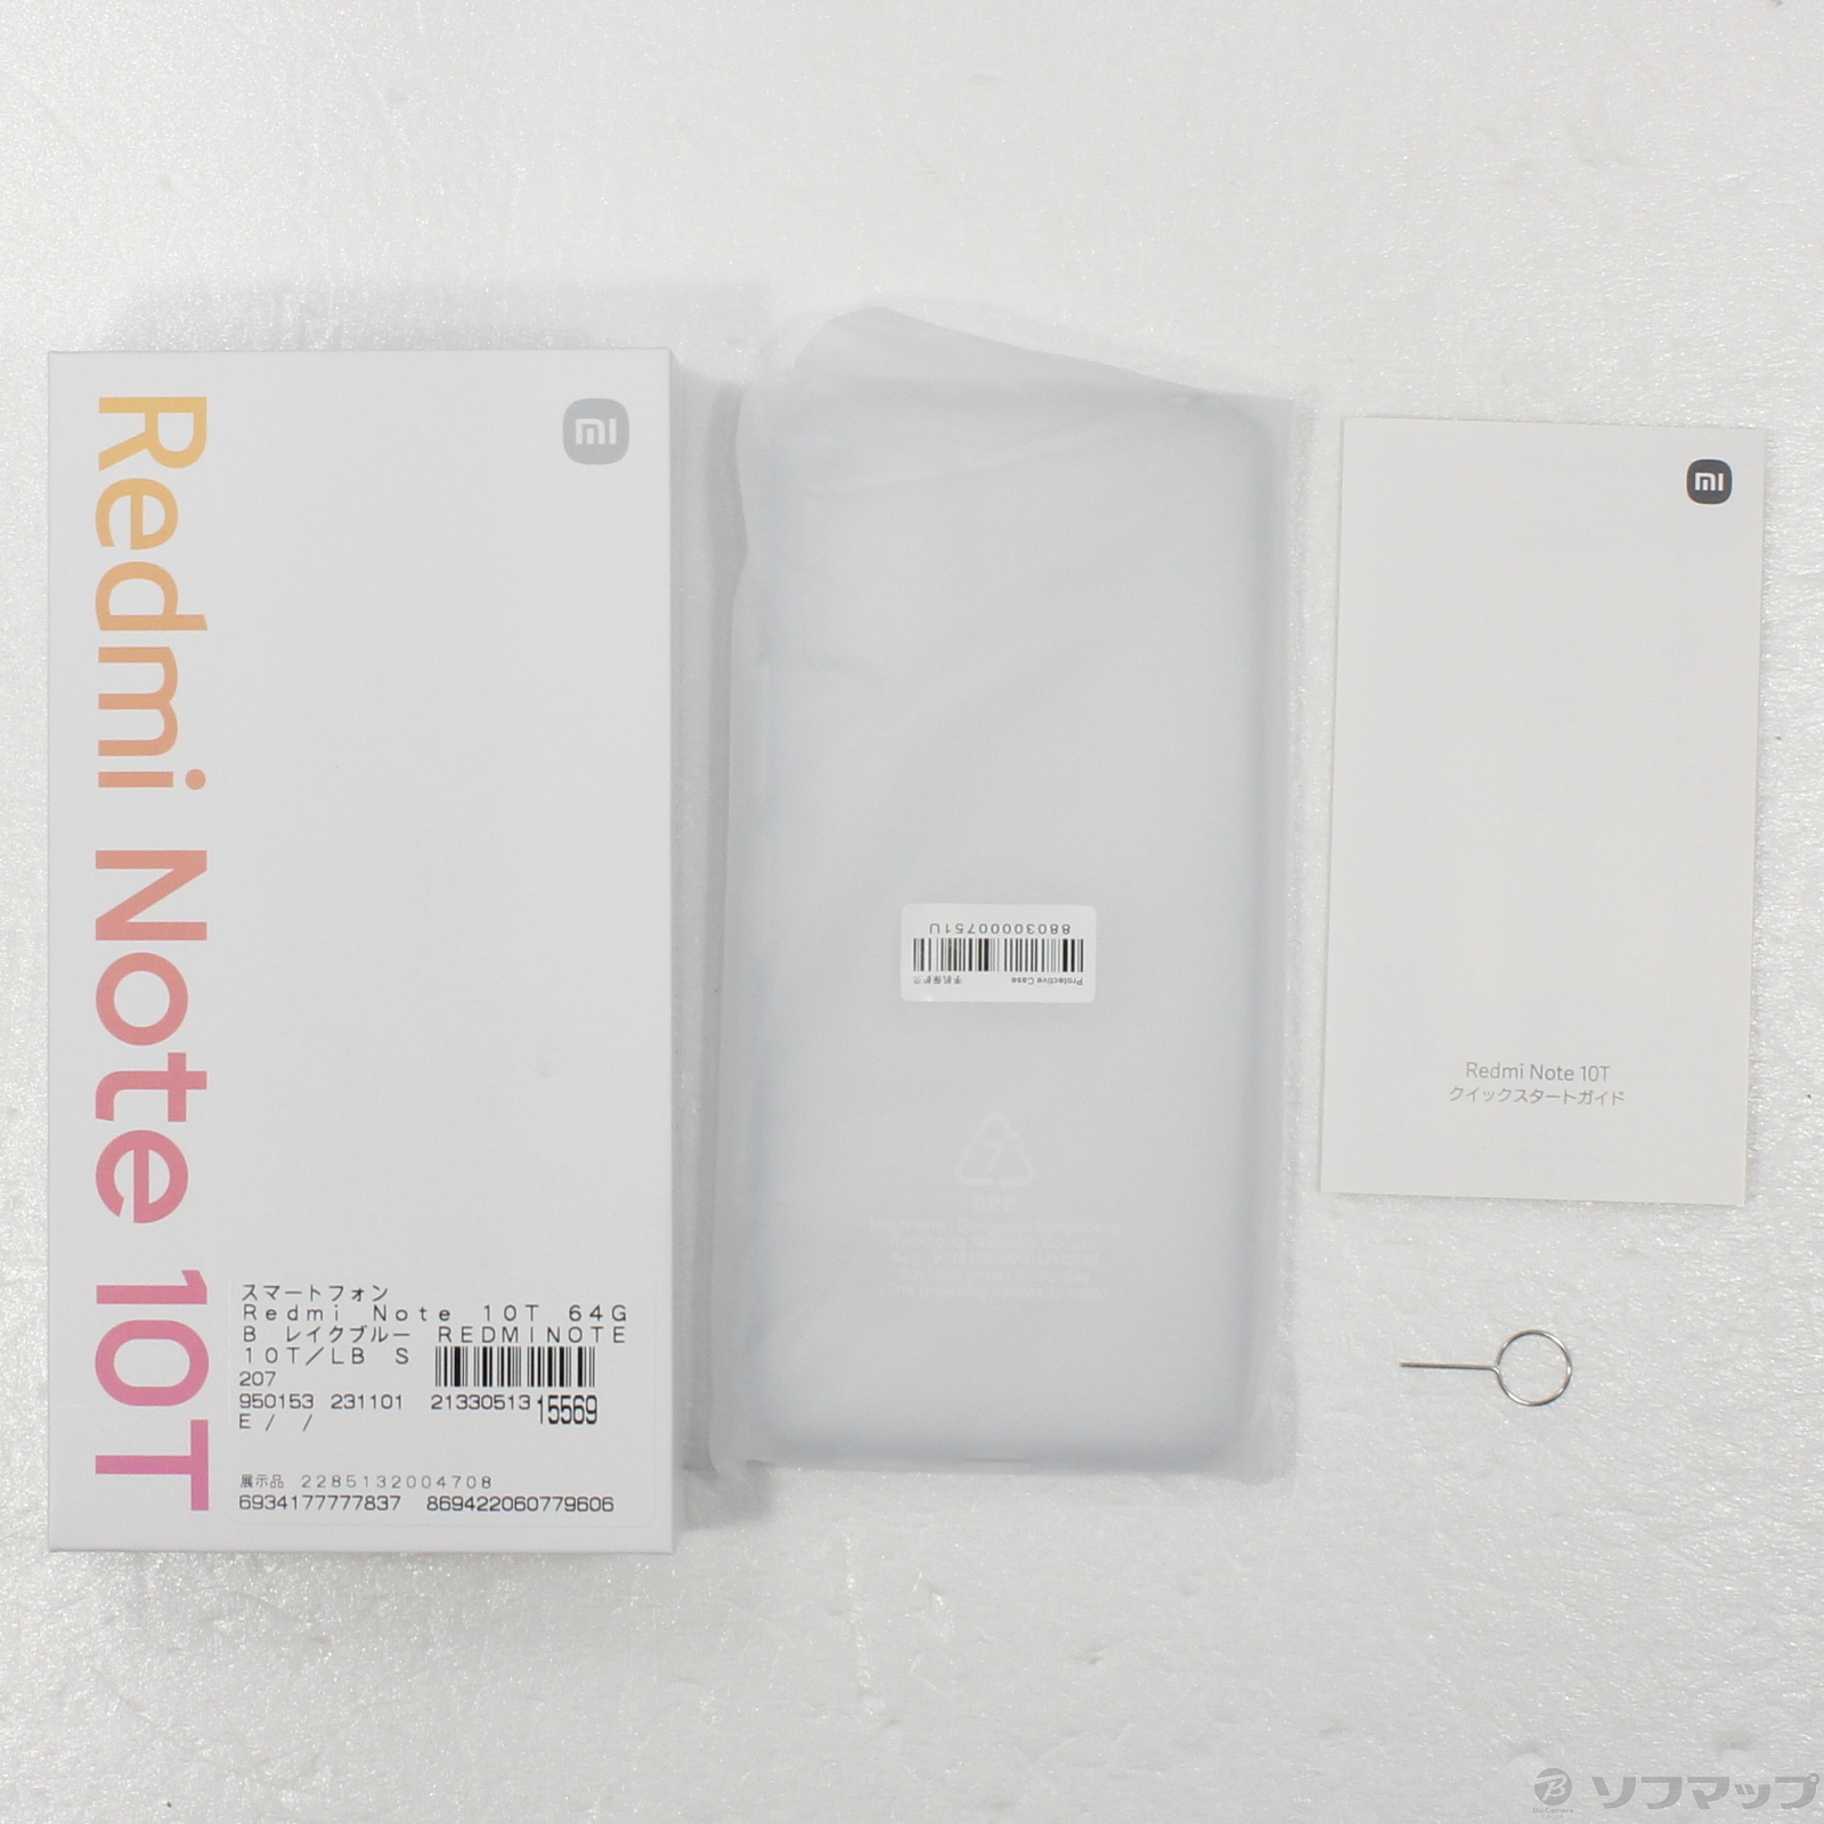 公式新作 Redmi Note 10T レイクブルー 64 GB SIMフリー